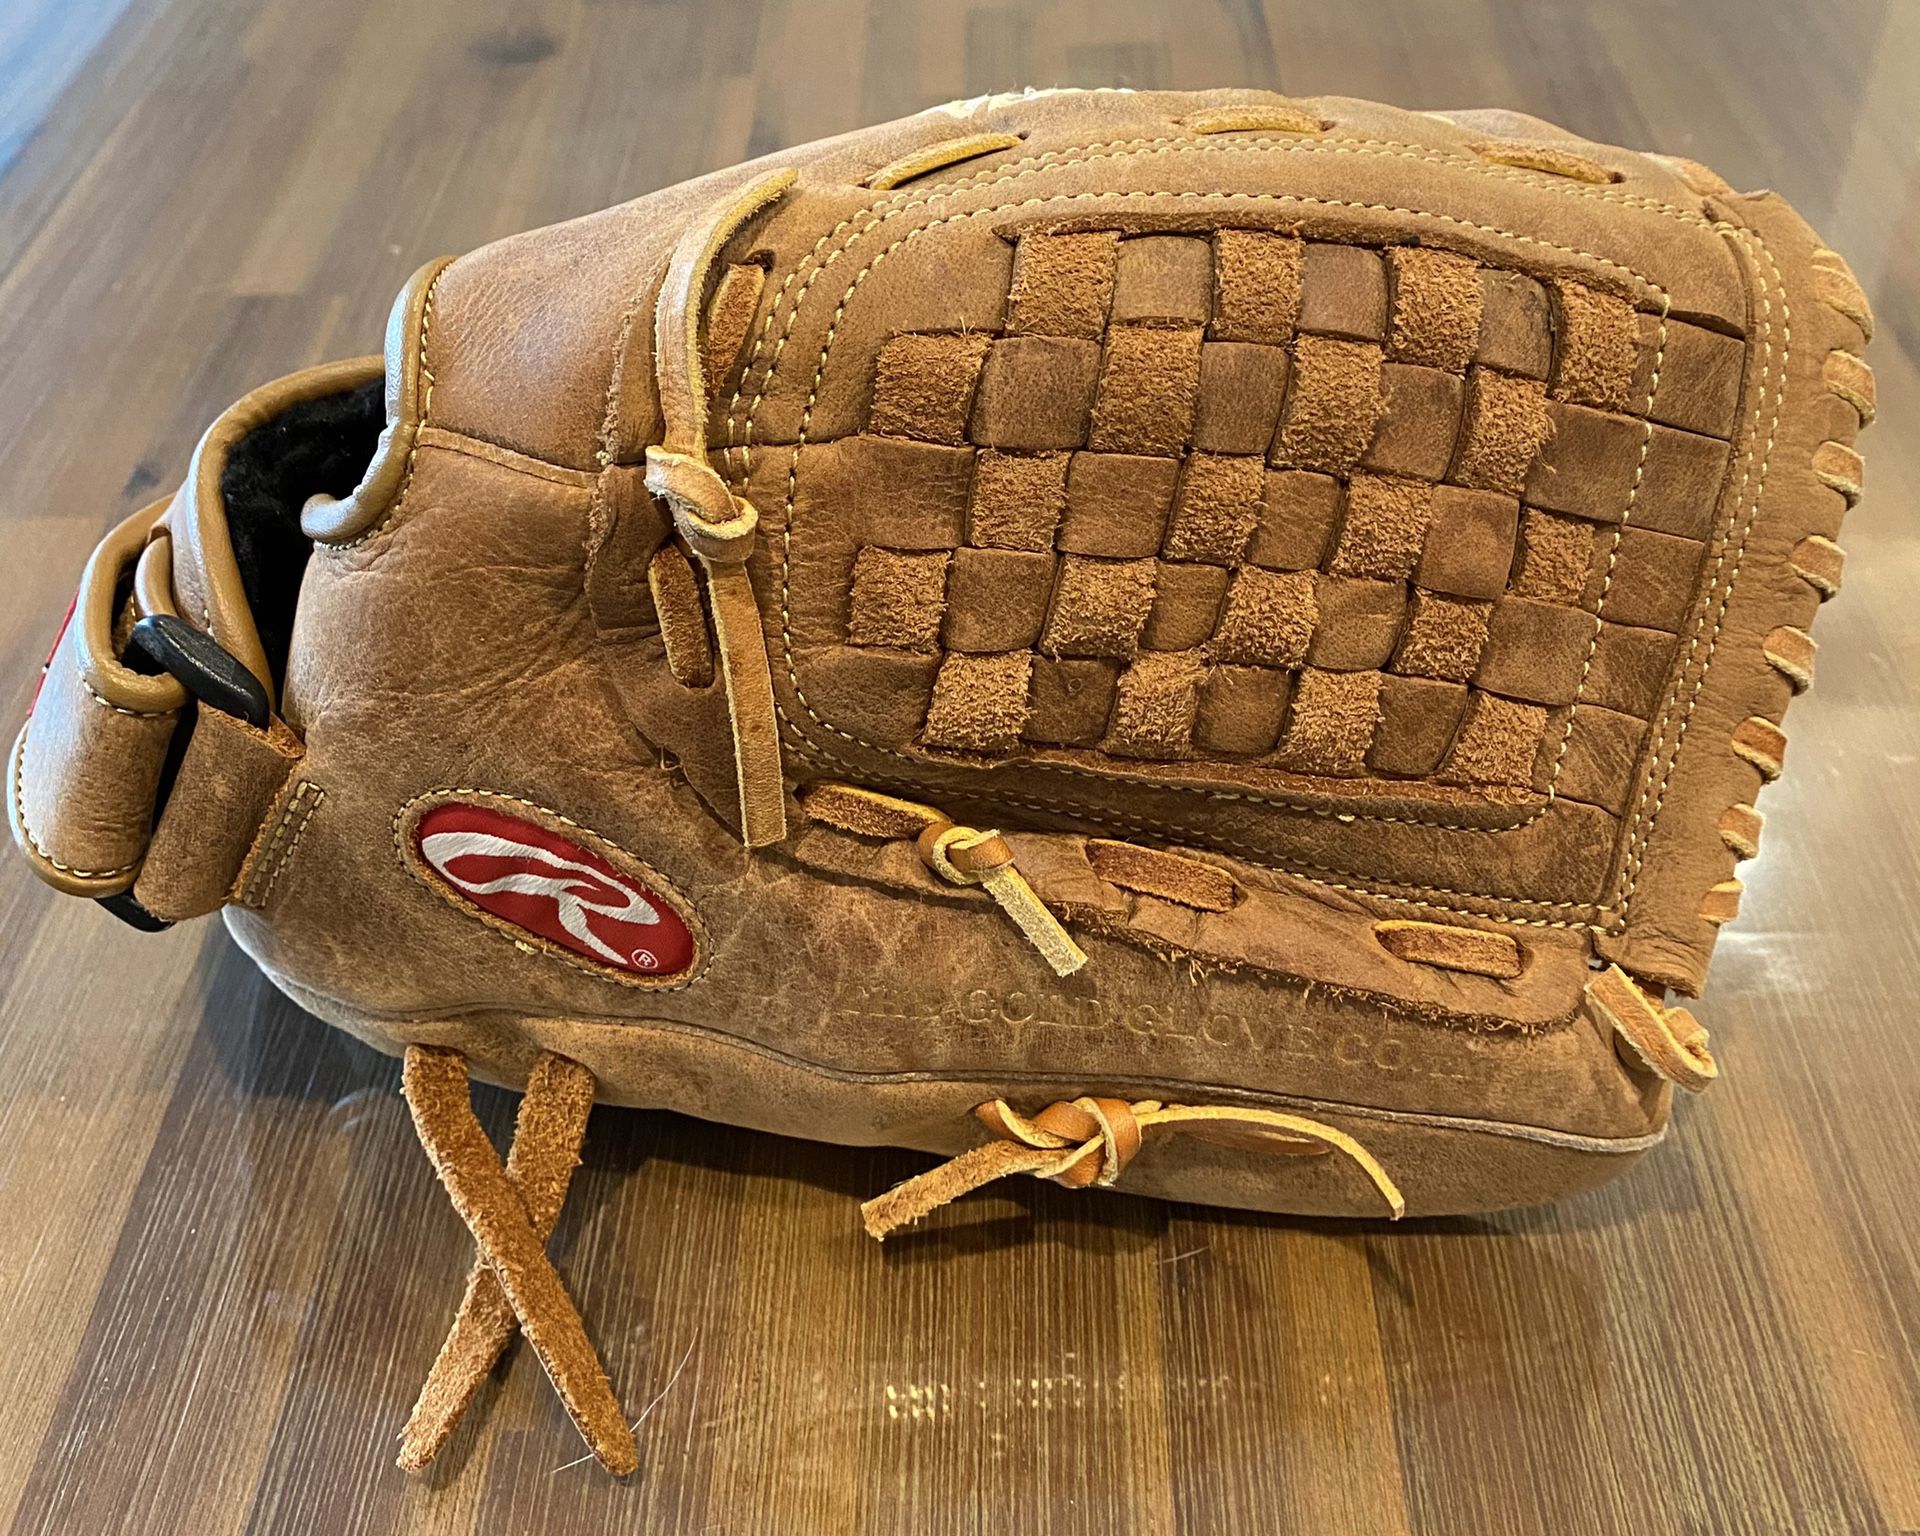 Rawlings baseball glove - $30 OBO